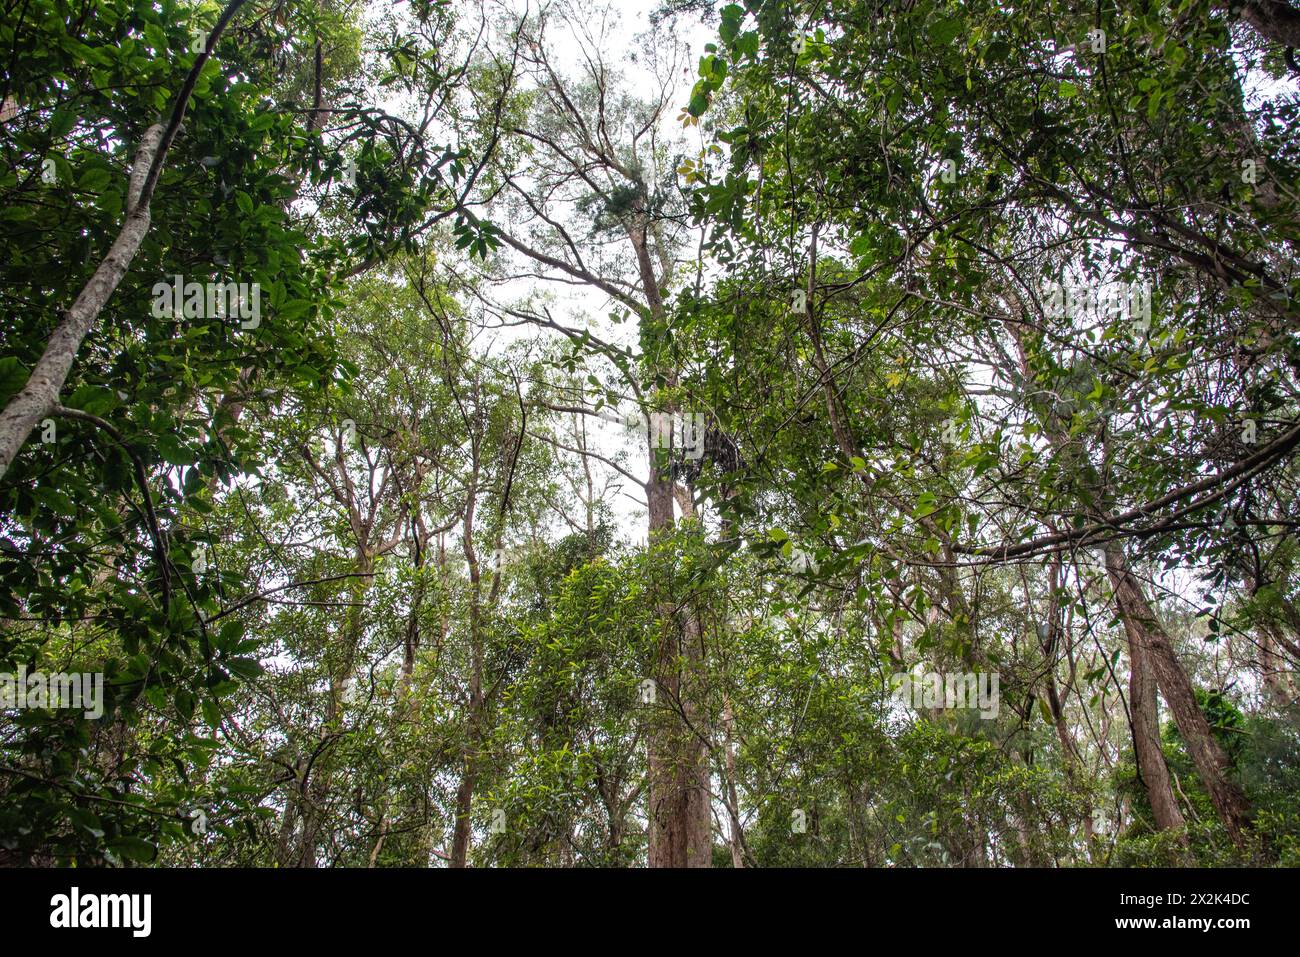 Superbe forêt tropicale avec un paysage dense et luxuriant entourant la vue panoramique australienne. Parc national de Springbrook, Queensland. Banque D'Images